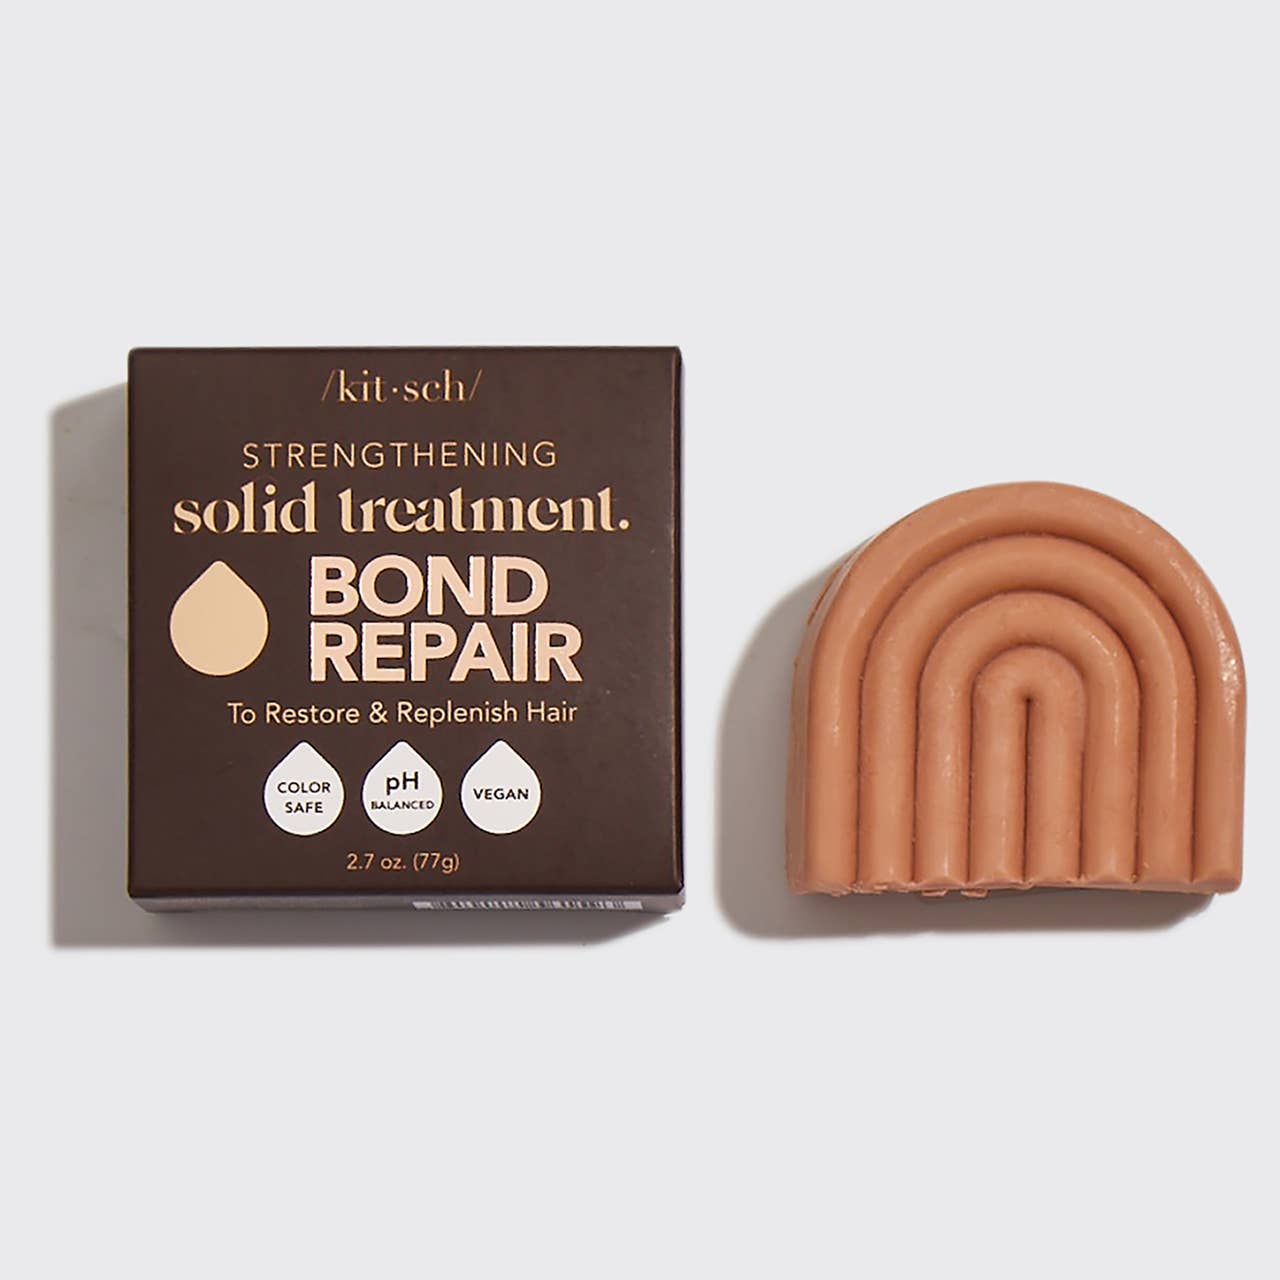 Bond Repair Solid Treatment Bar for Hair